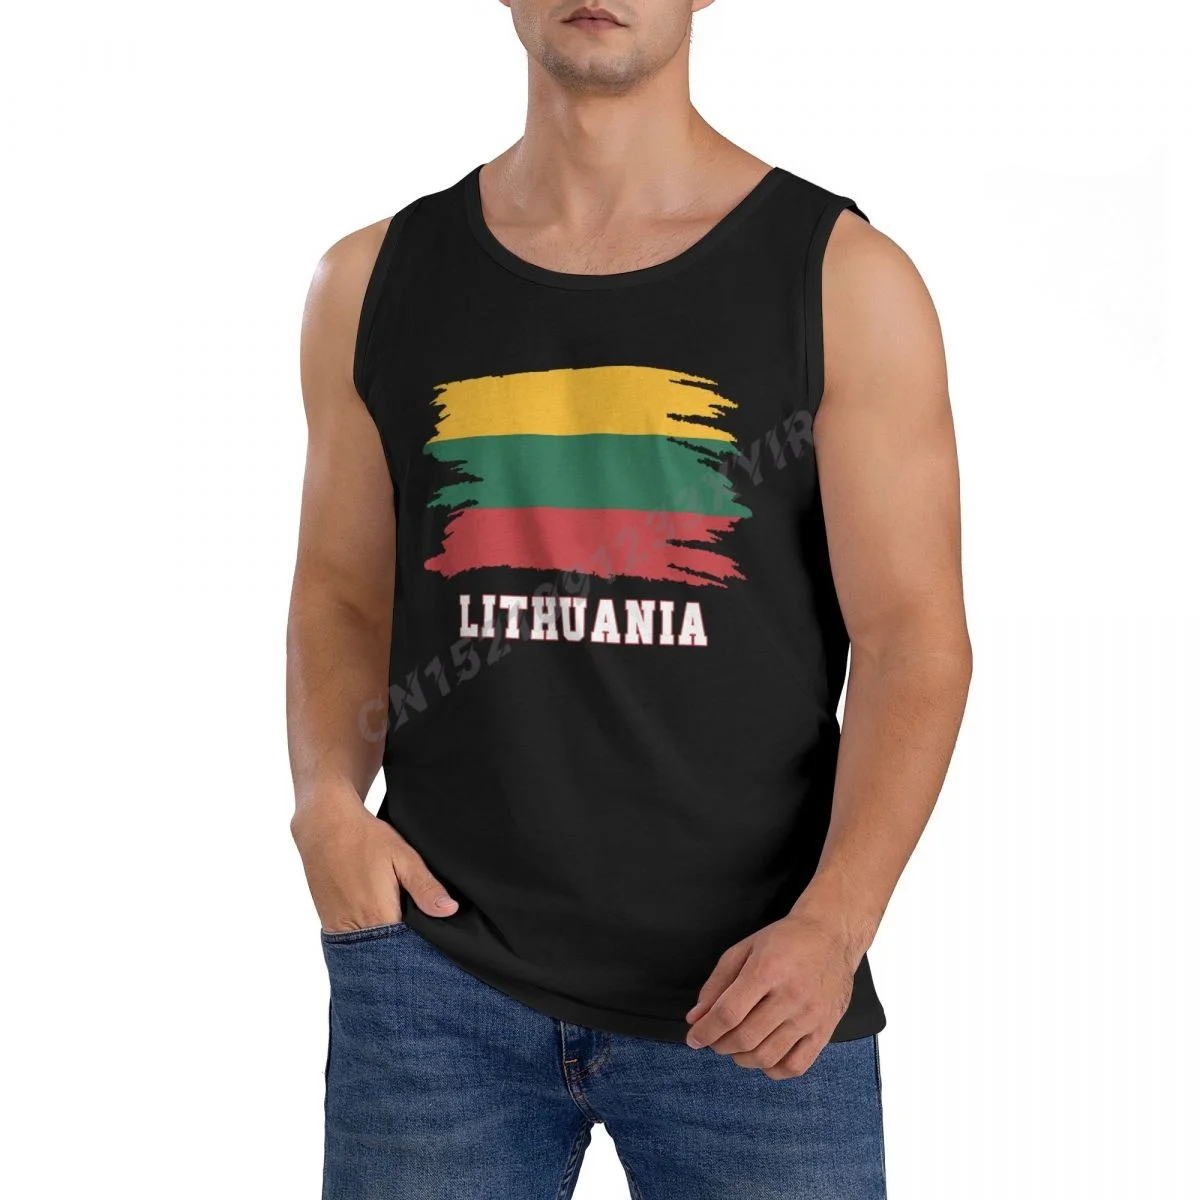 

Мужская майка с флагом Литвы, литовские фанаты, карта страны, это в моем ДНК, мужская рубашка, хип-хоп, без рукавов, 100% хлопок